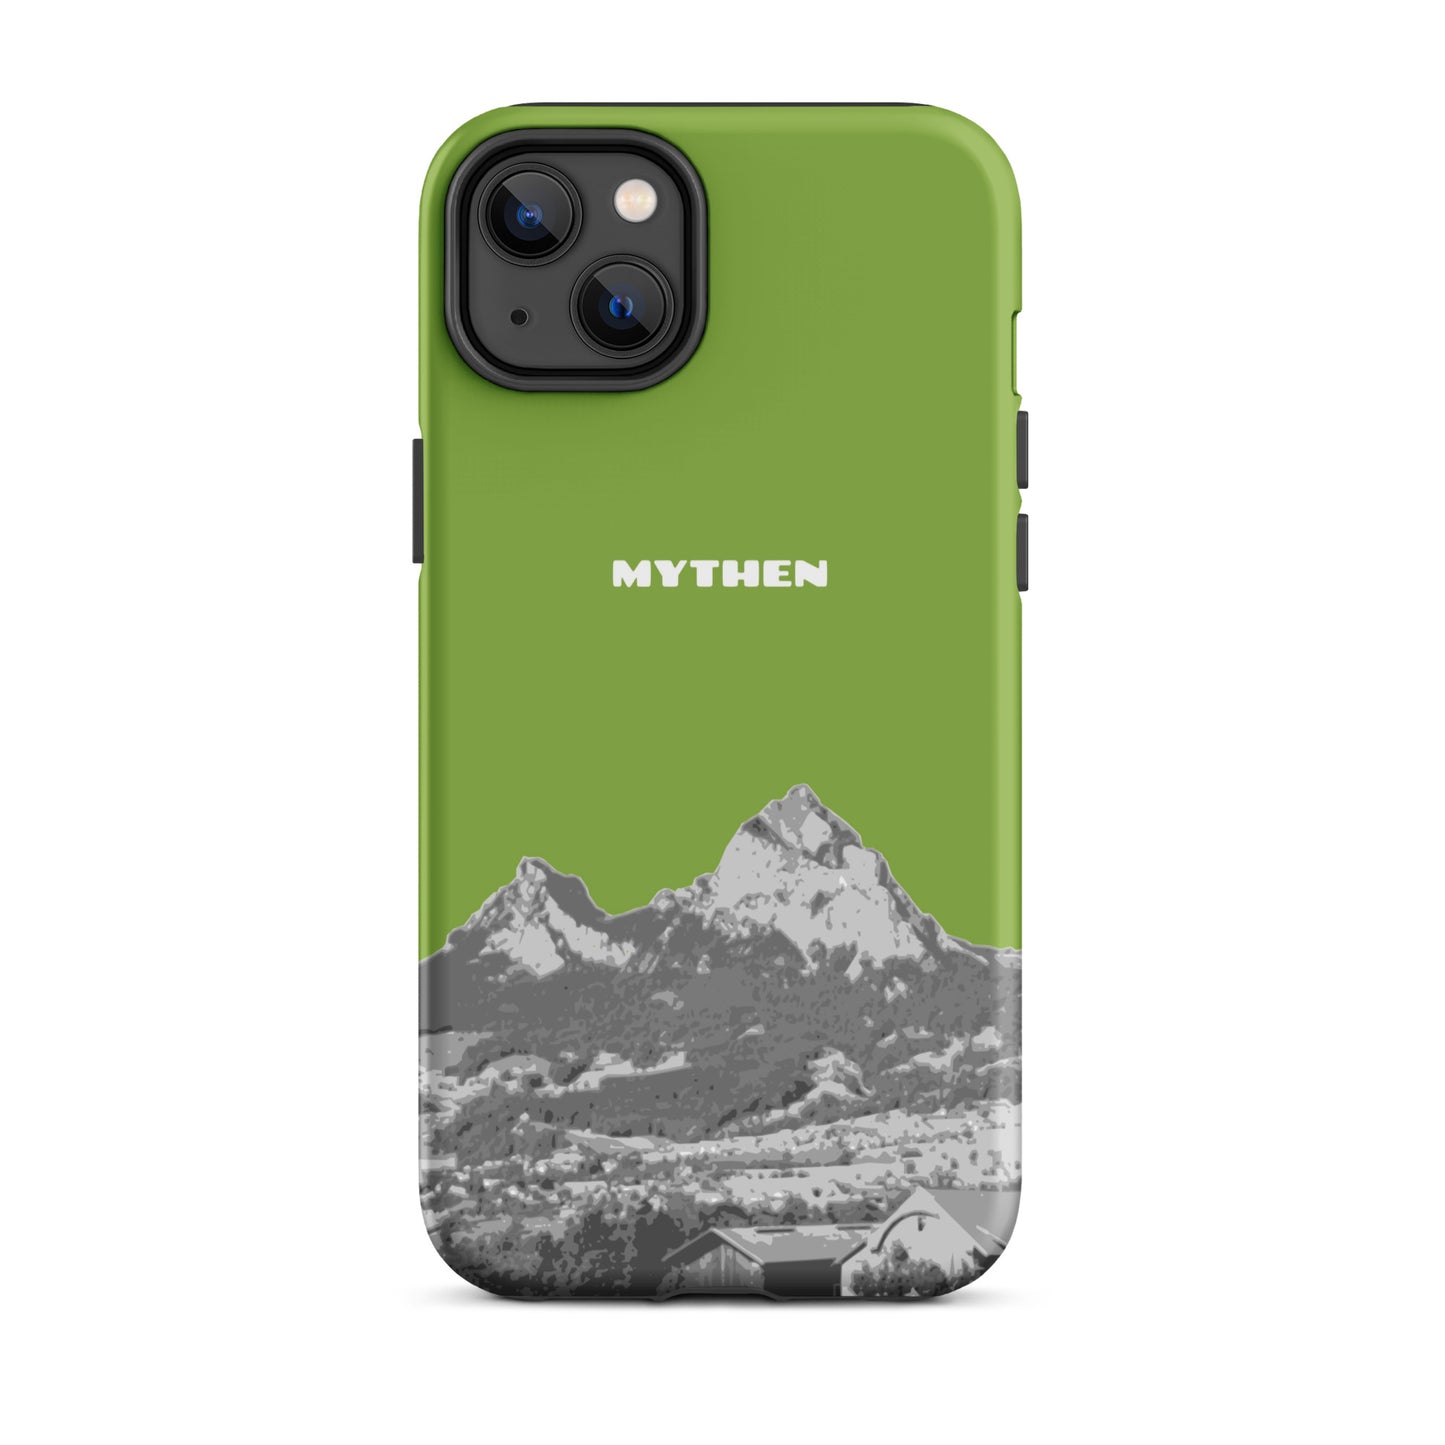 Hülle für das iPhone 14 Plus von Apple in der Farbe Gelbgrün, die den Grossen Mythen und den Kleinen Mythen bei Schwyz zeigt. 